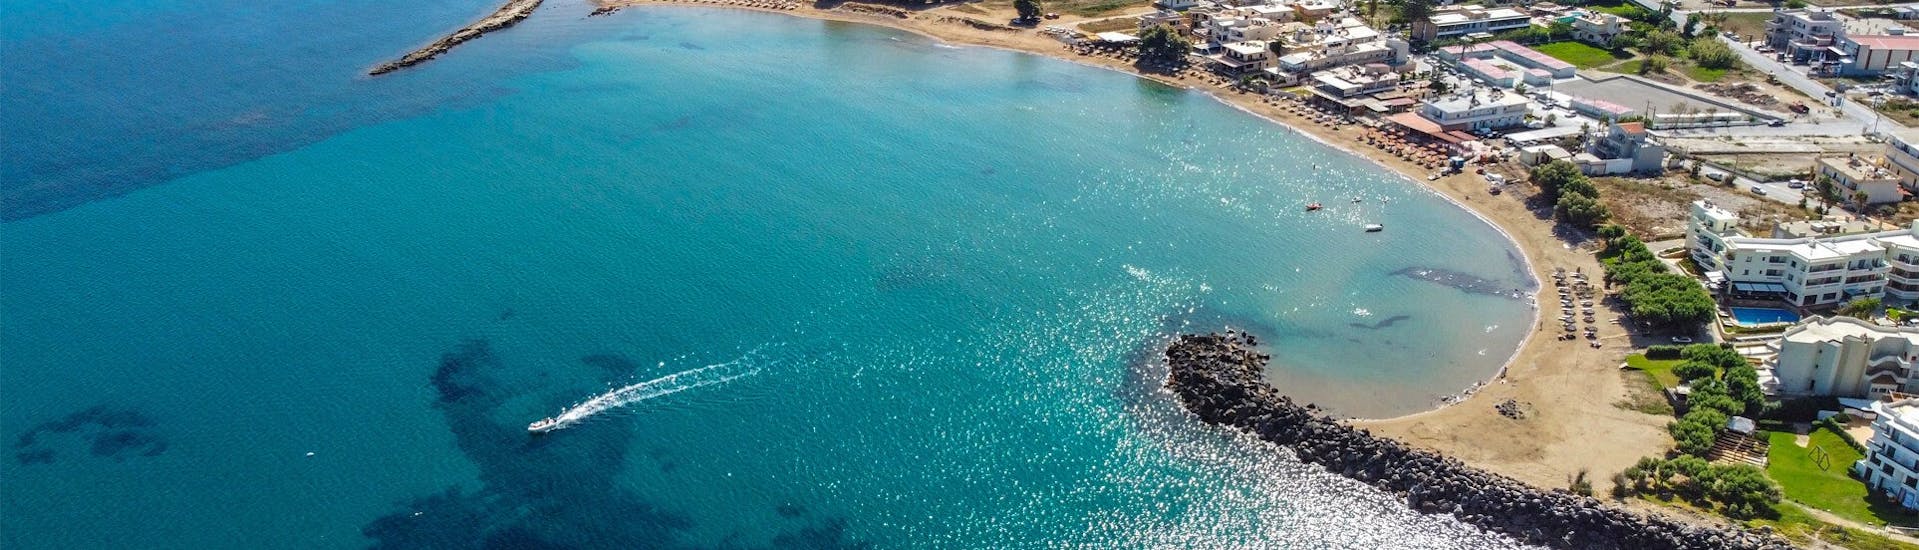 La côte de Kissamos et les magnifiques eaux bleues de Crète pendant la location de kayak à Kissamos par Kissamos Sea Sports.